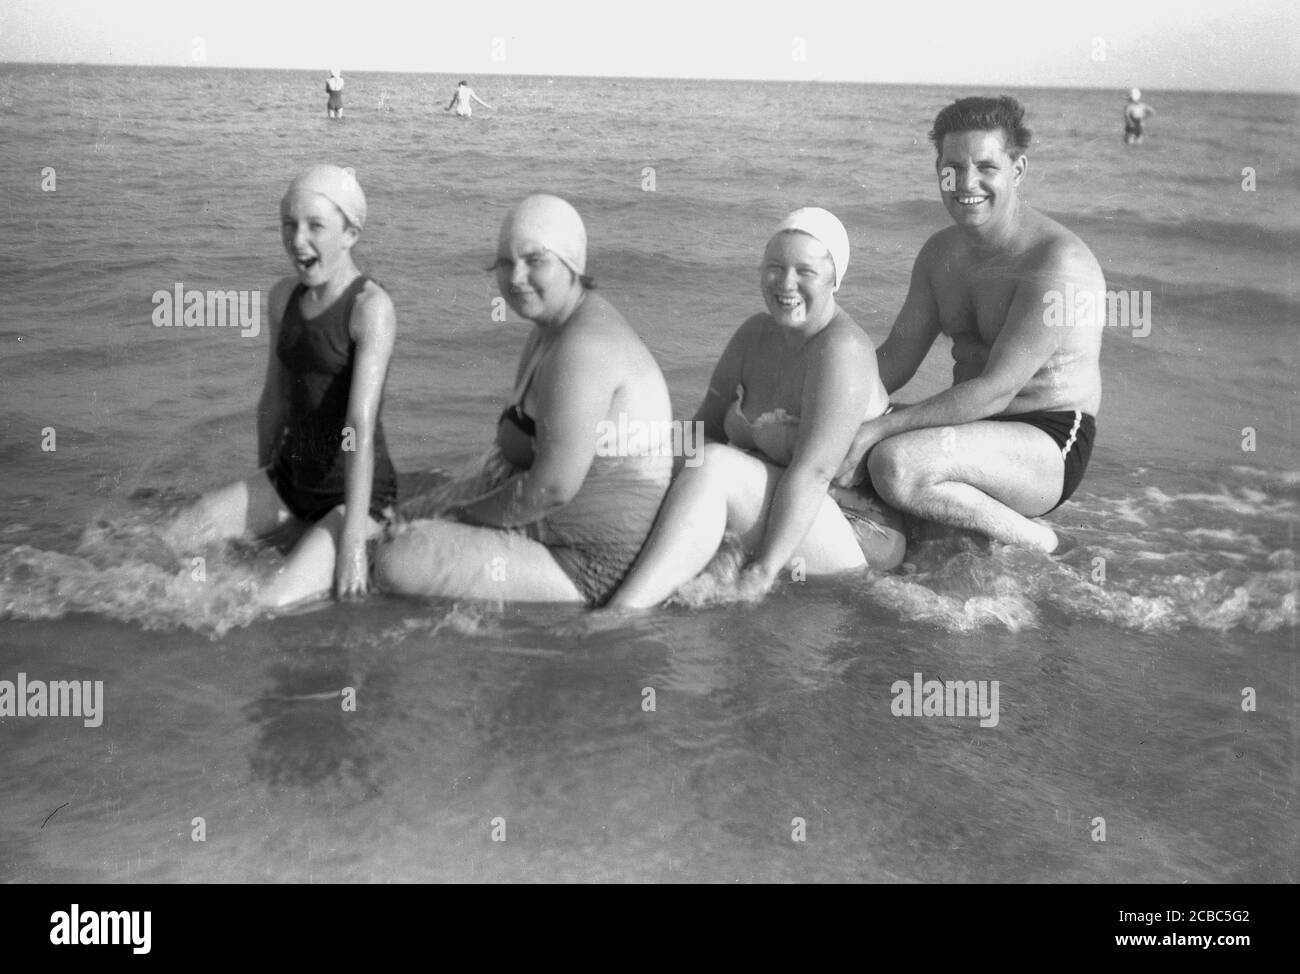 Années 1950, historique, au bord de la mer, une famille s'amusant pendant leurs vacances assis dans les eaux peu profondes de l'océan, posant pour une photo, Angleterre, Royaume-Uni. Banque D'Images